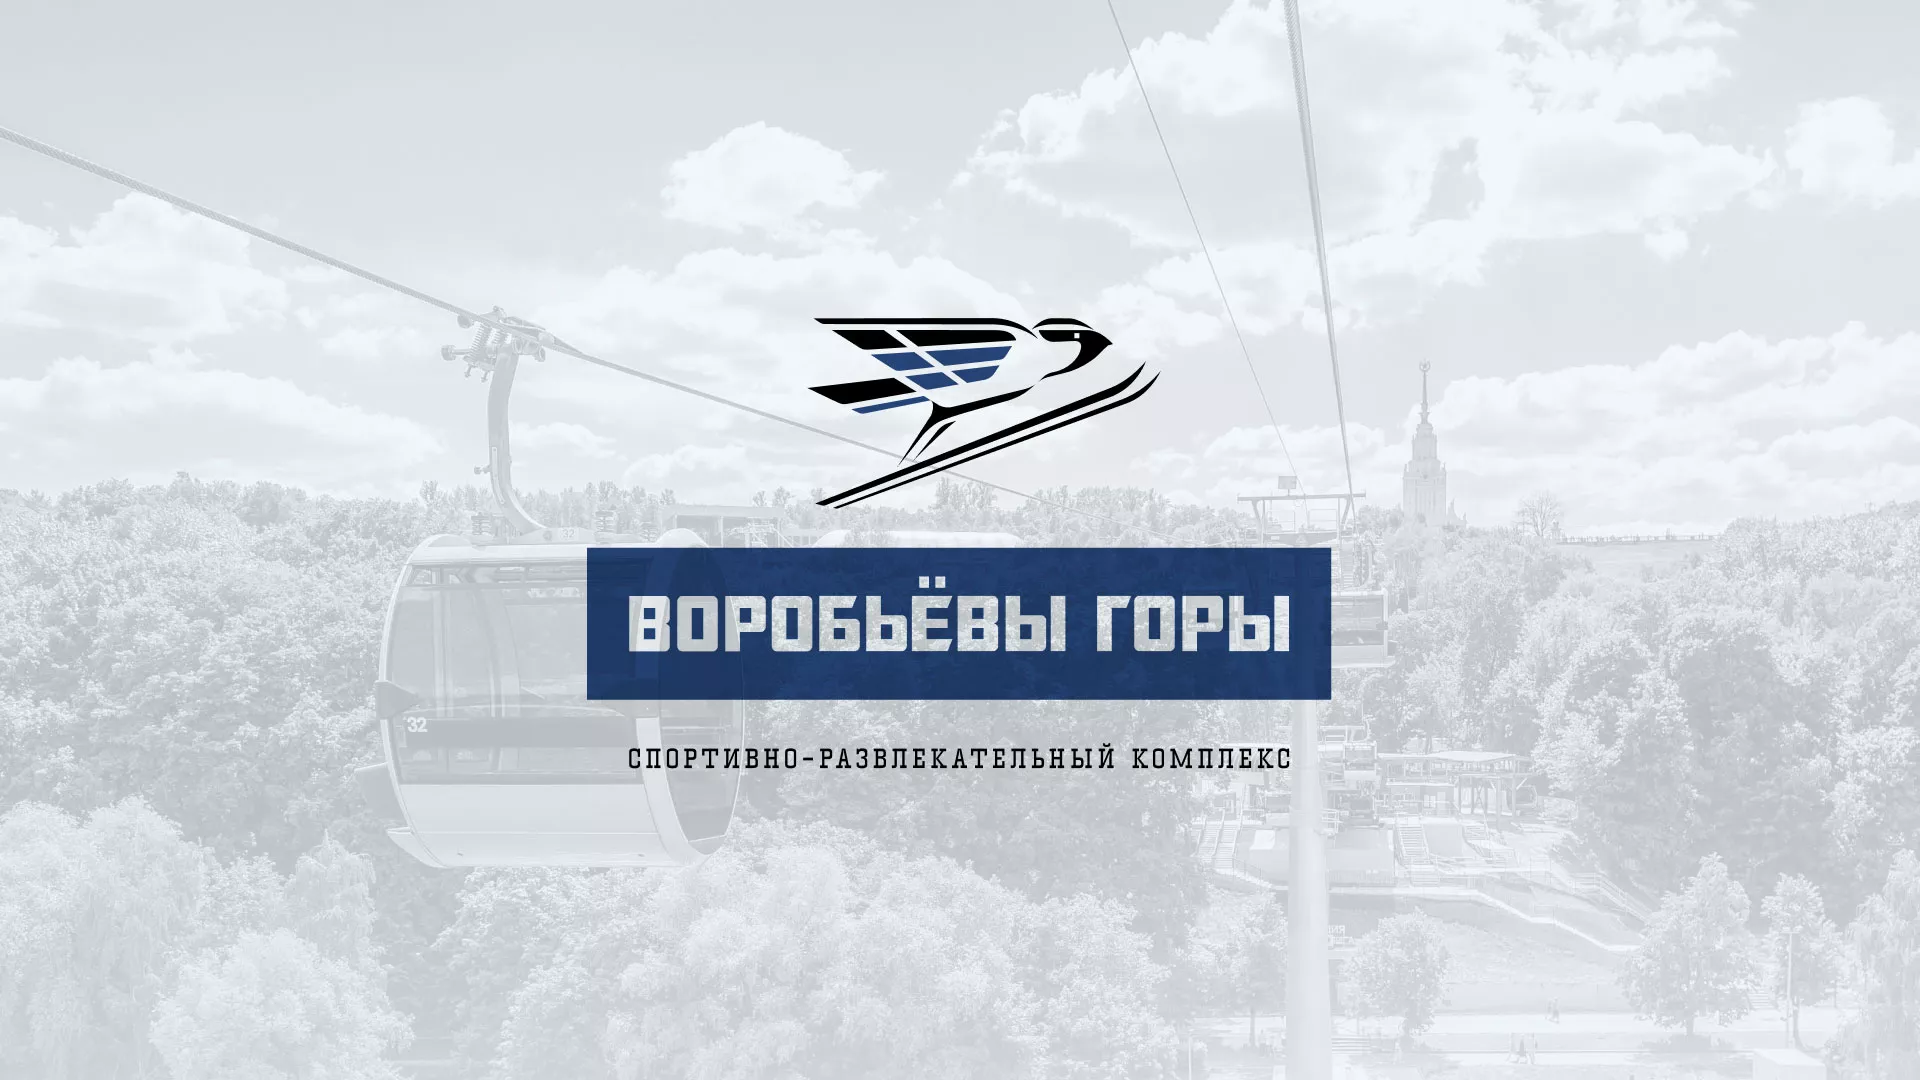 Разработка сайта в Вышнем Волочке для спортивно-развлекательного комплекса «Воробьёвы горы»